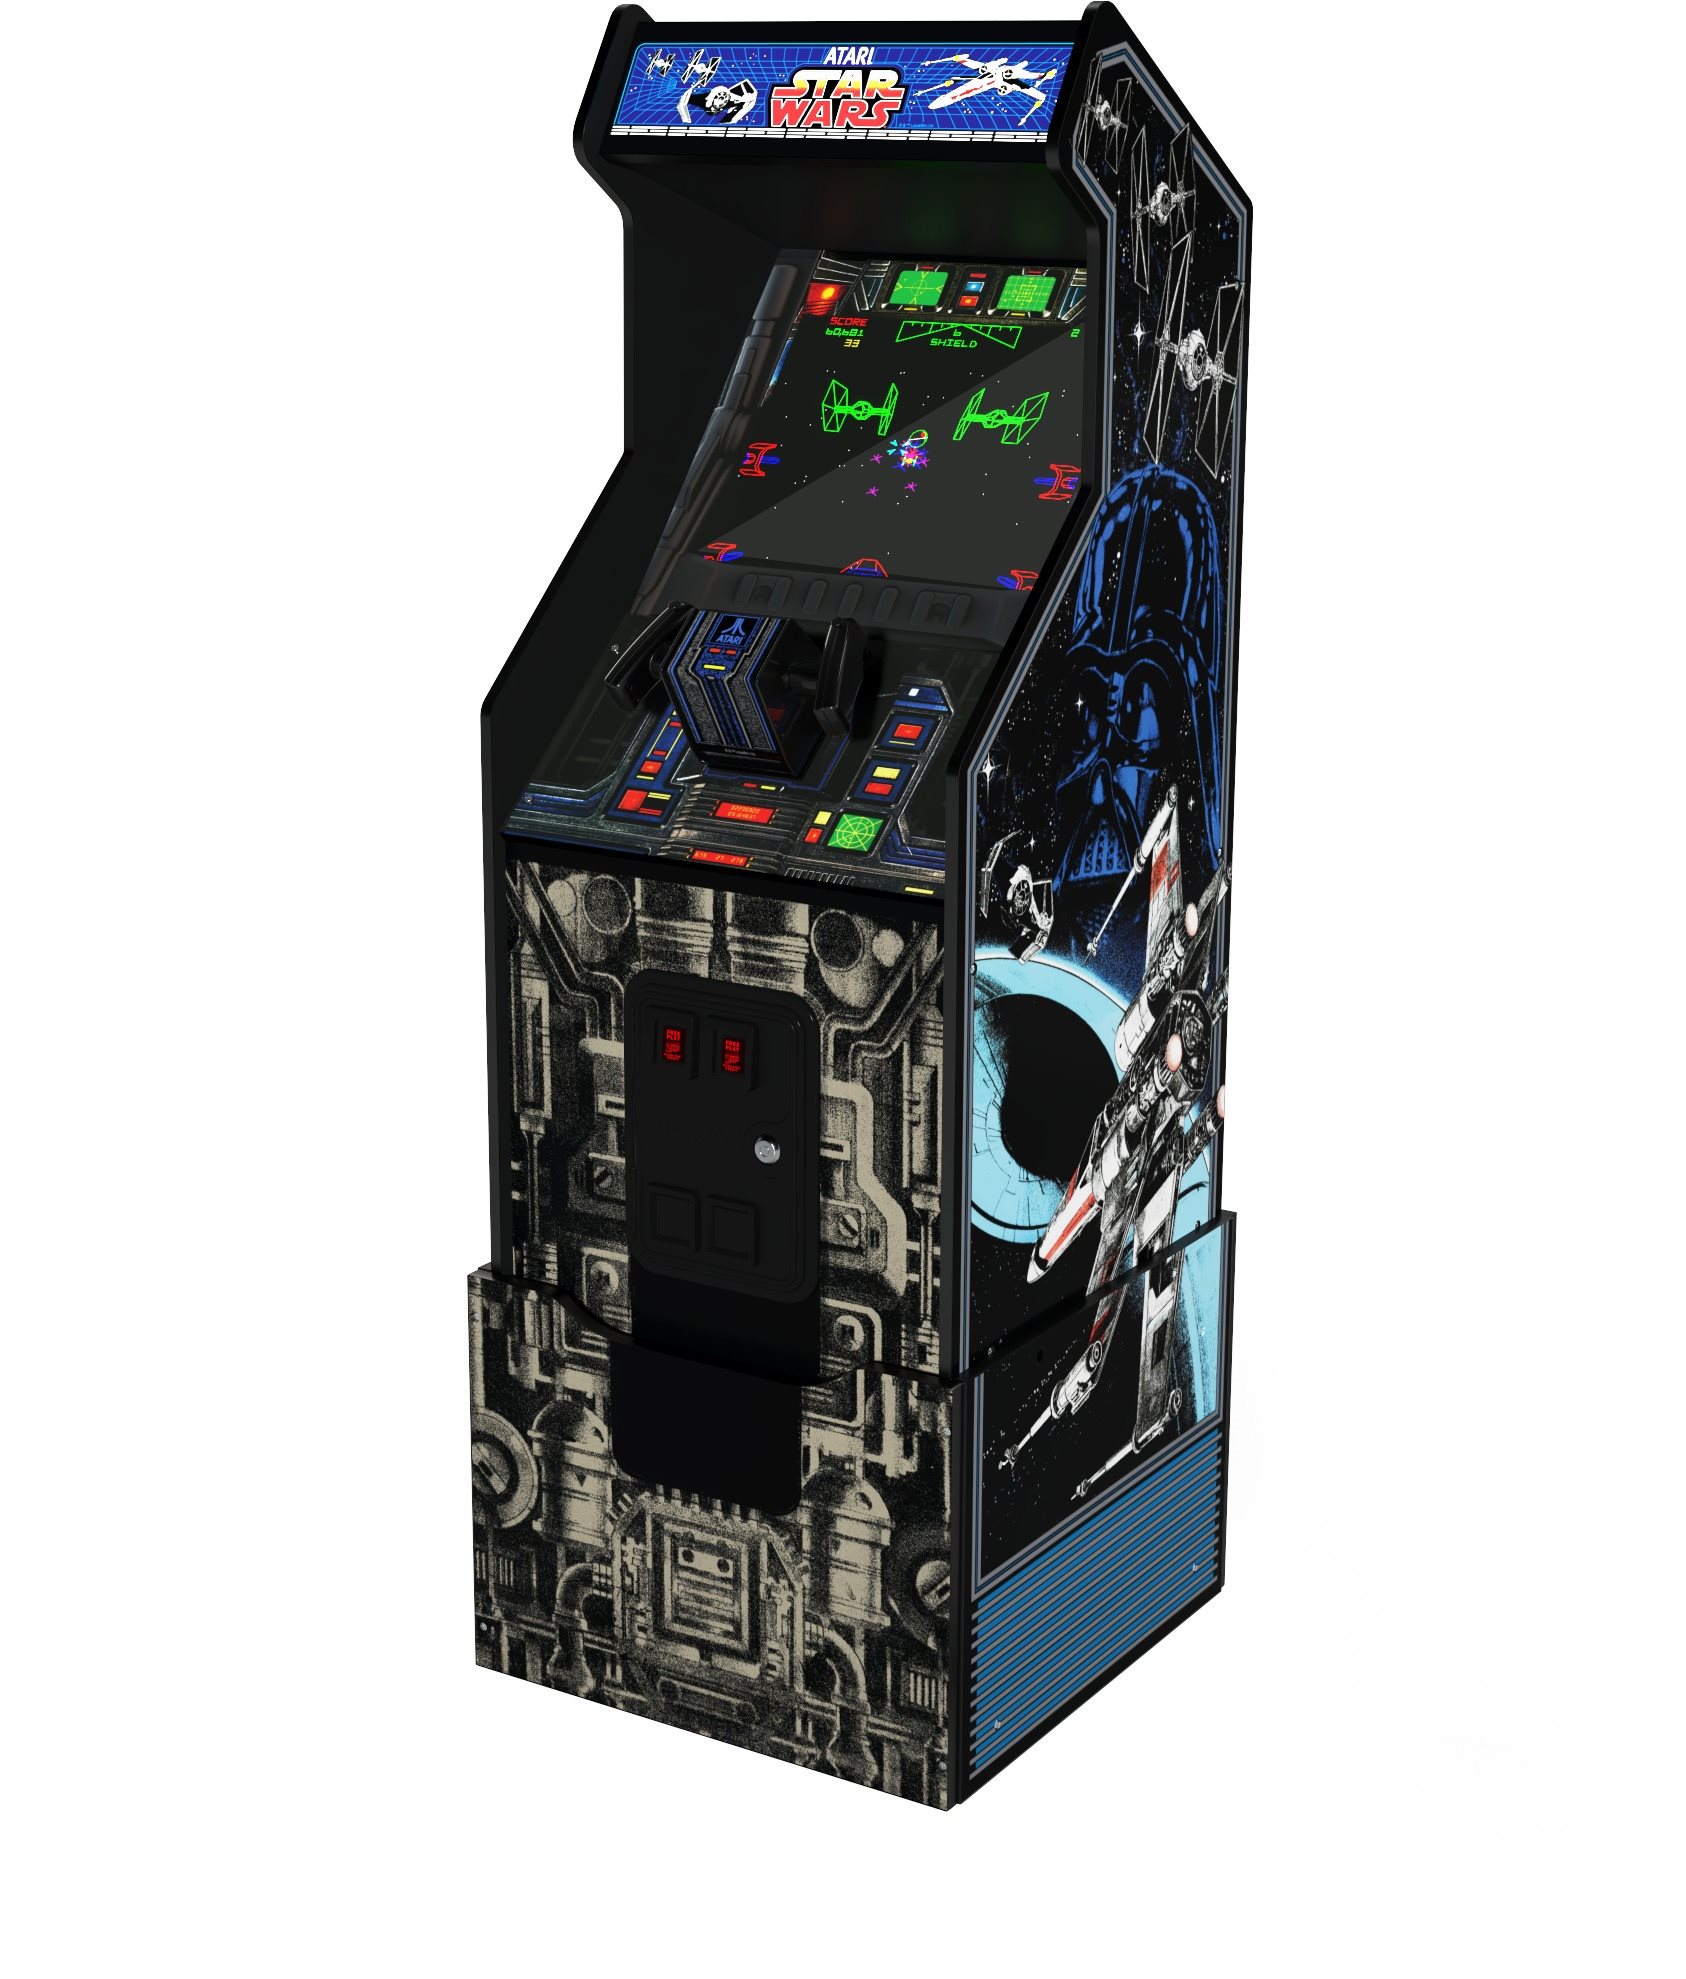 Retro játékkonzol Arcade1Up Star Wars Arcade Game